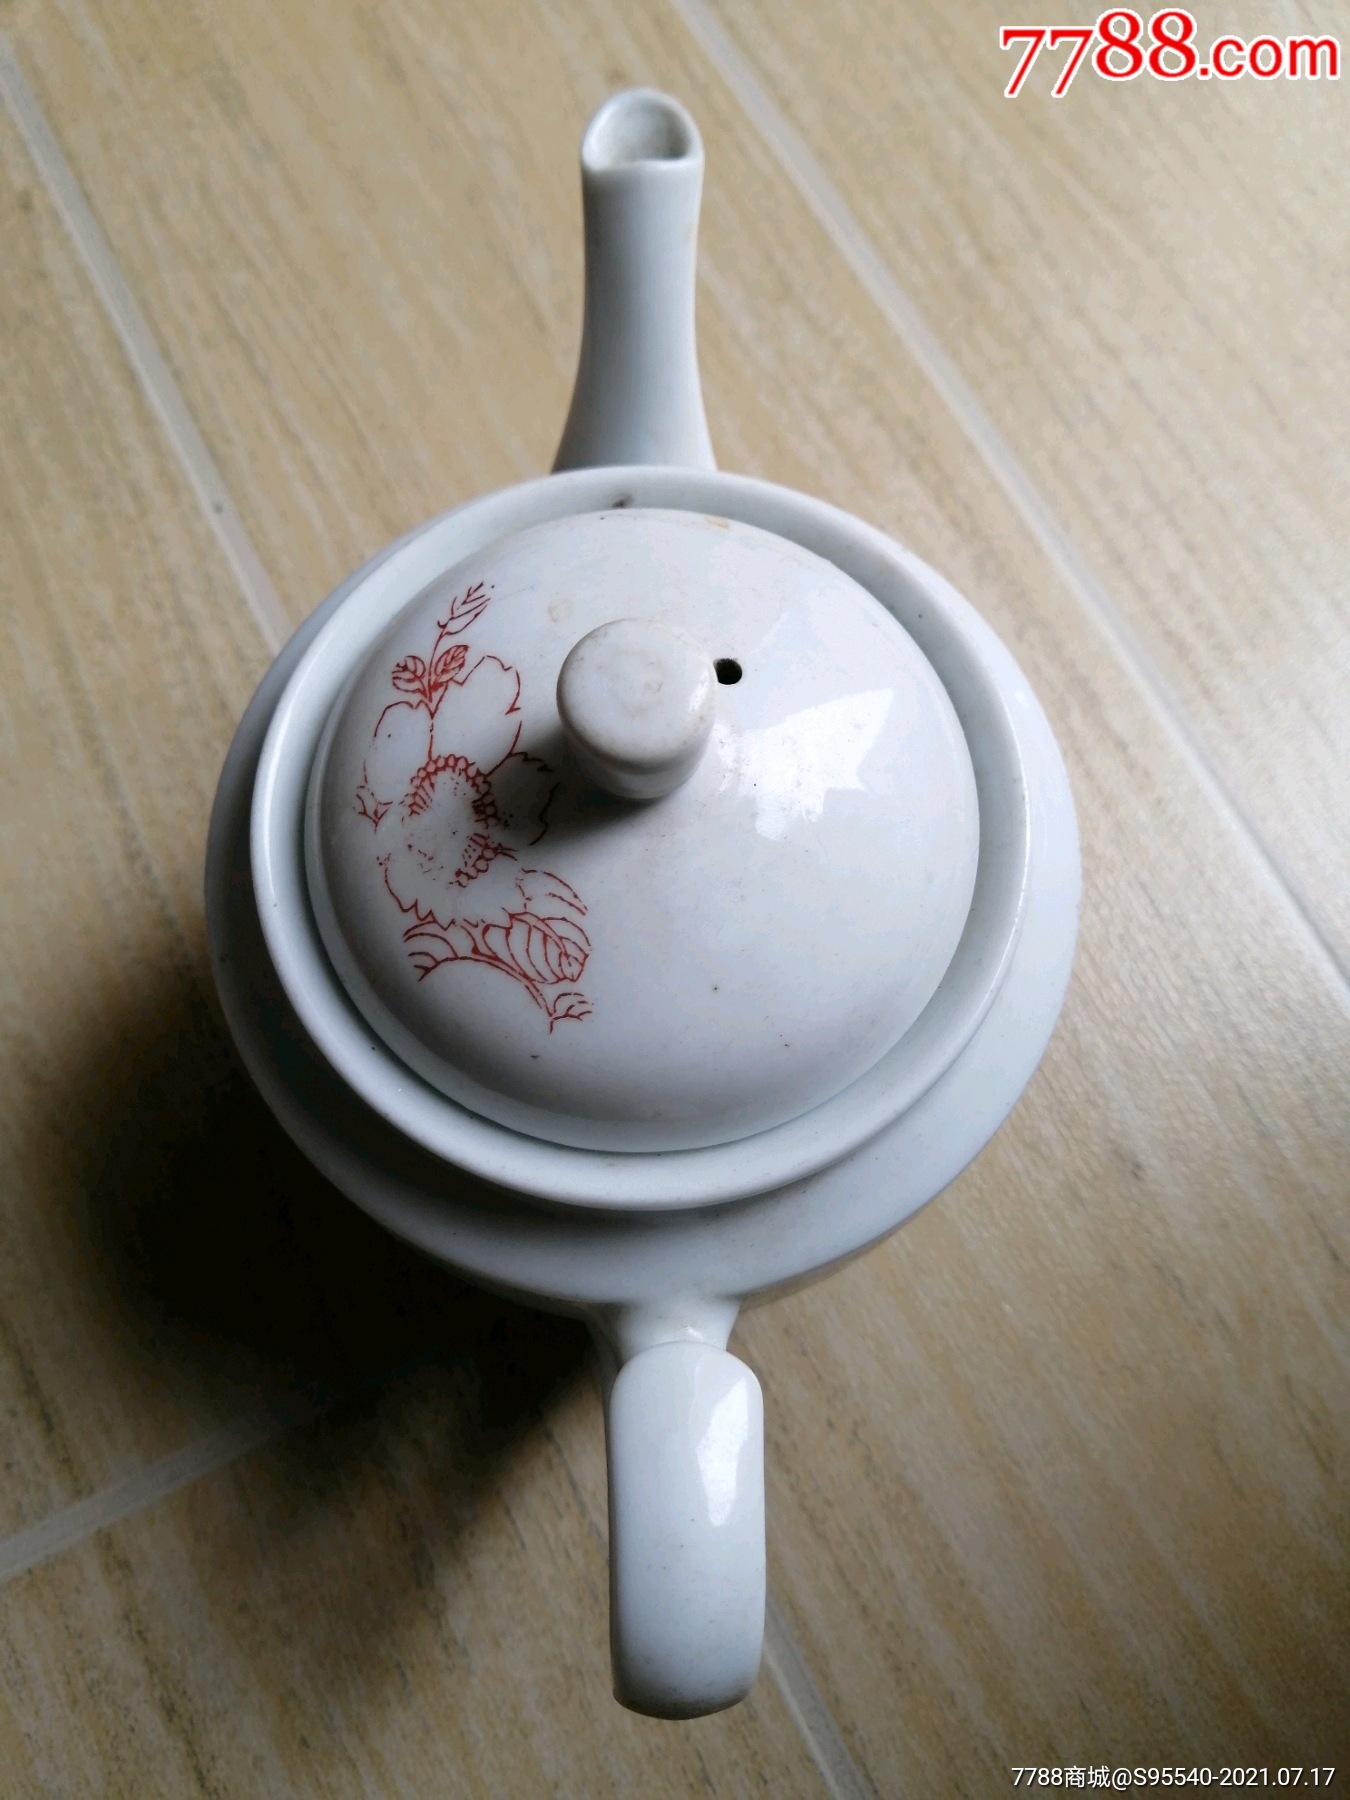 醴陵六七年代茶壶图片